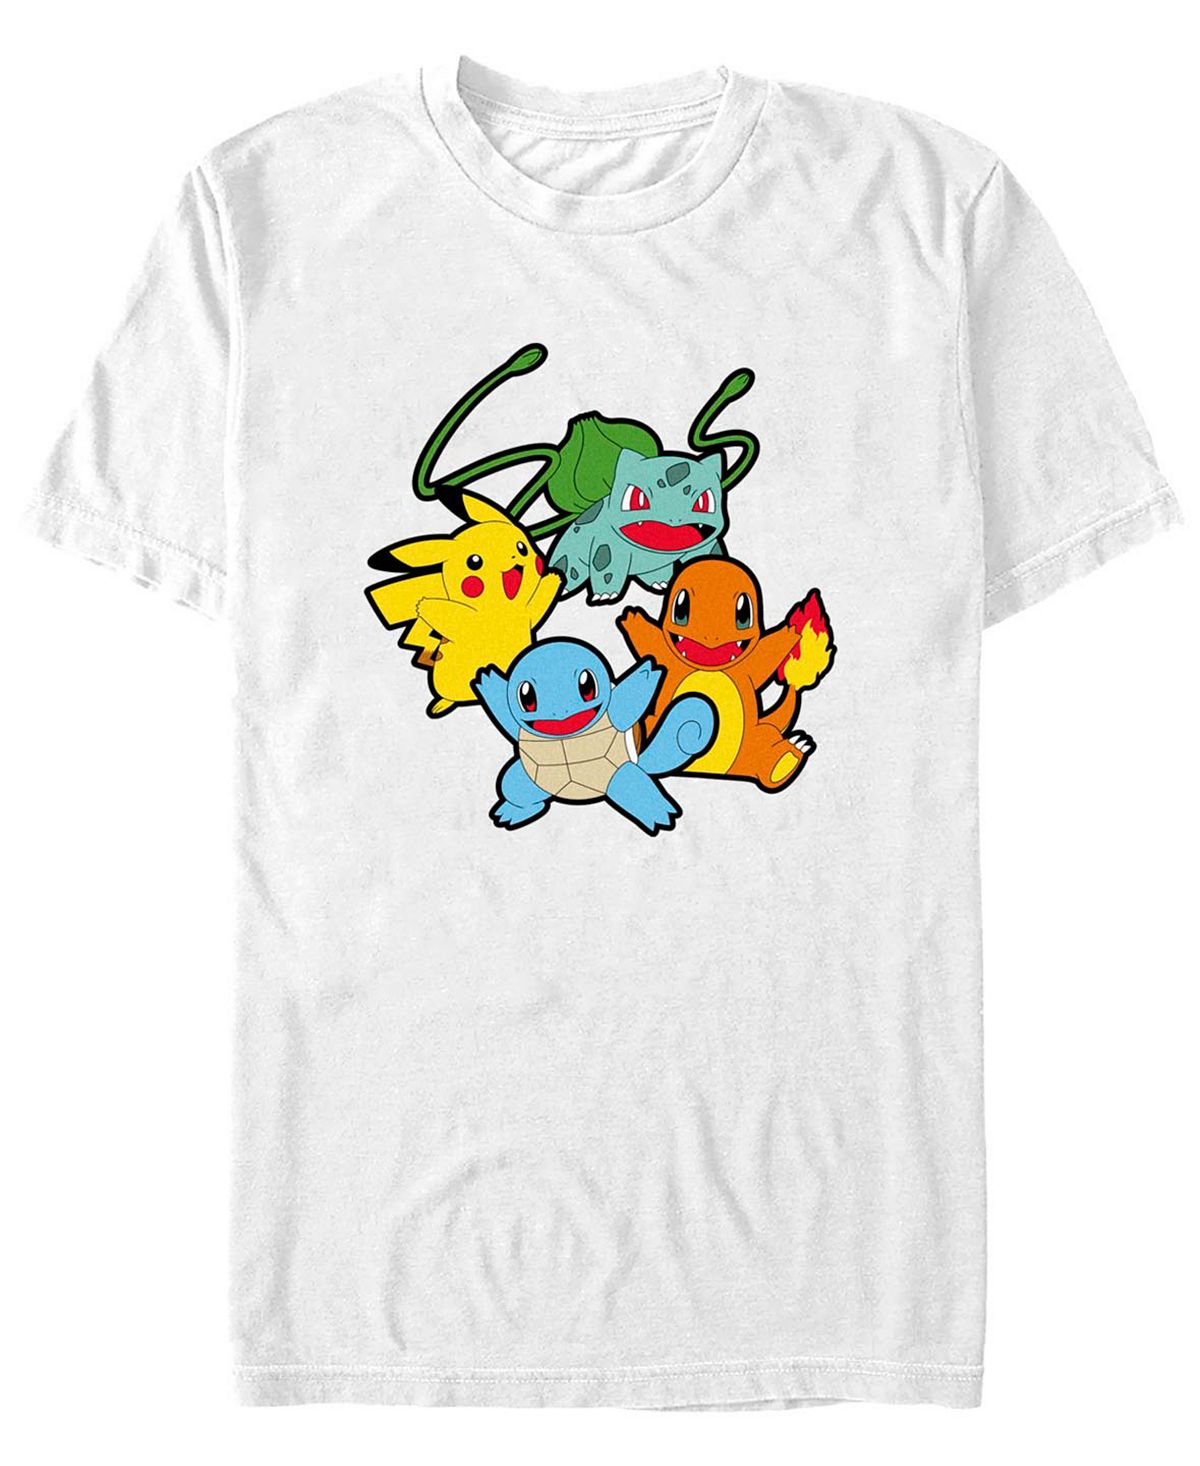 Мужская классическая футболка с короткими рукавами pokemon group Fifth Sun, белый мужская футболка с короткими рукавами scooby doo creepy flashlight group fifth sun черный